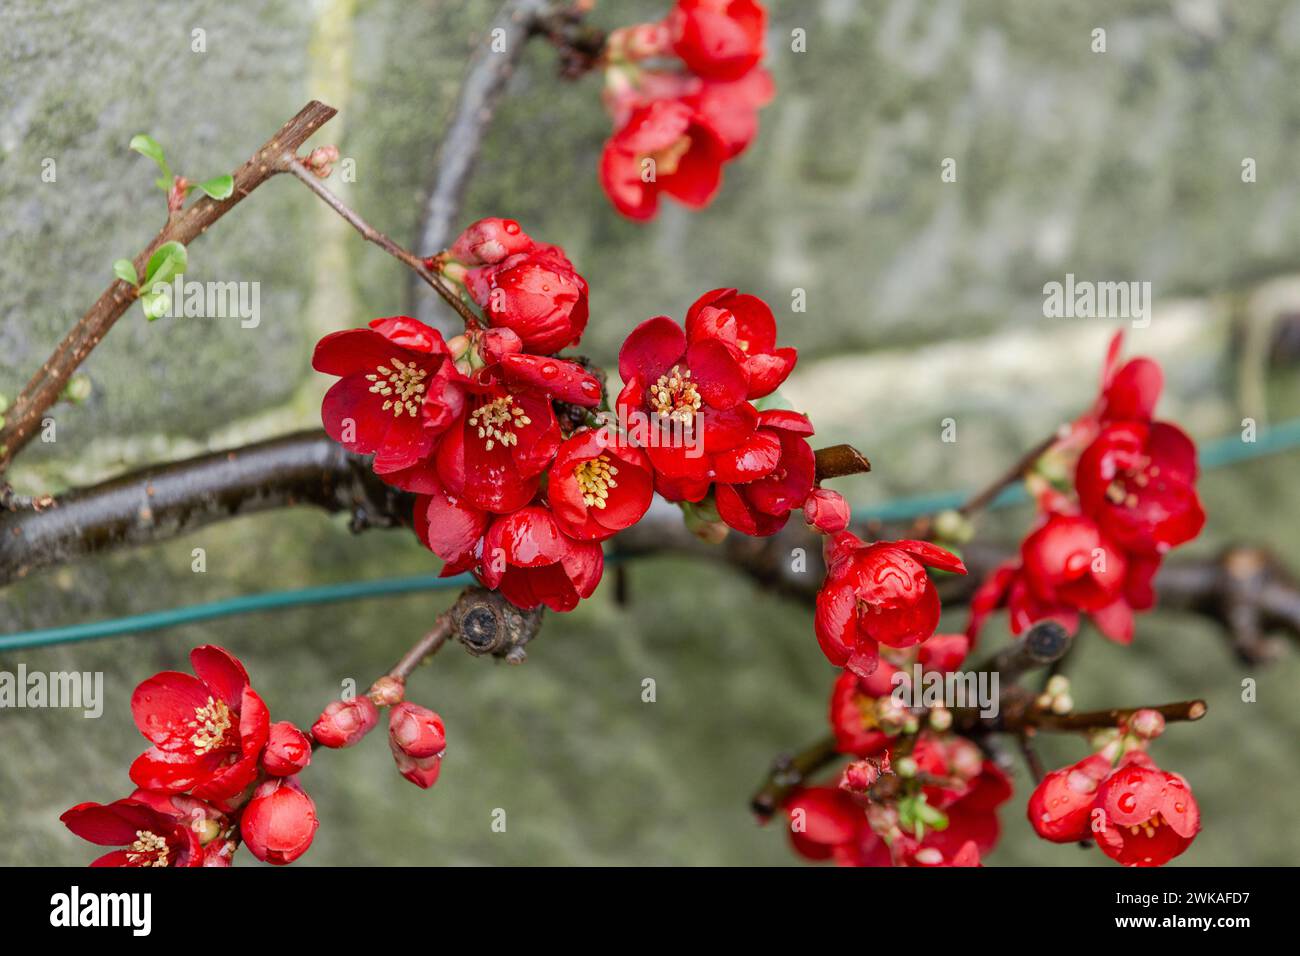 Quince giapponese (Chaenomeles japonica) che cresce su un muro. Fioritura invernale, questo arbusto dona colore al giardino d'inverno. Foto Stock